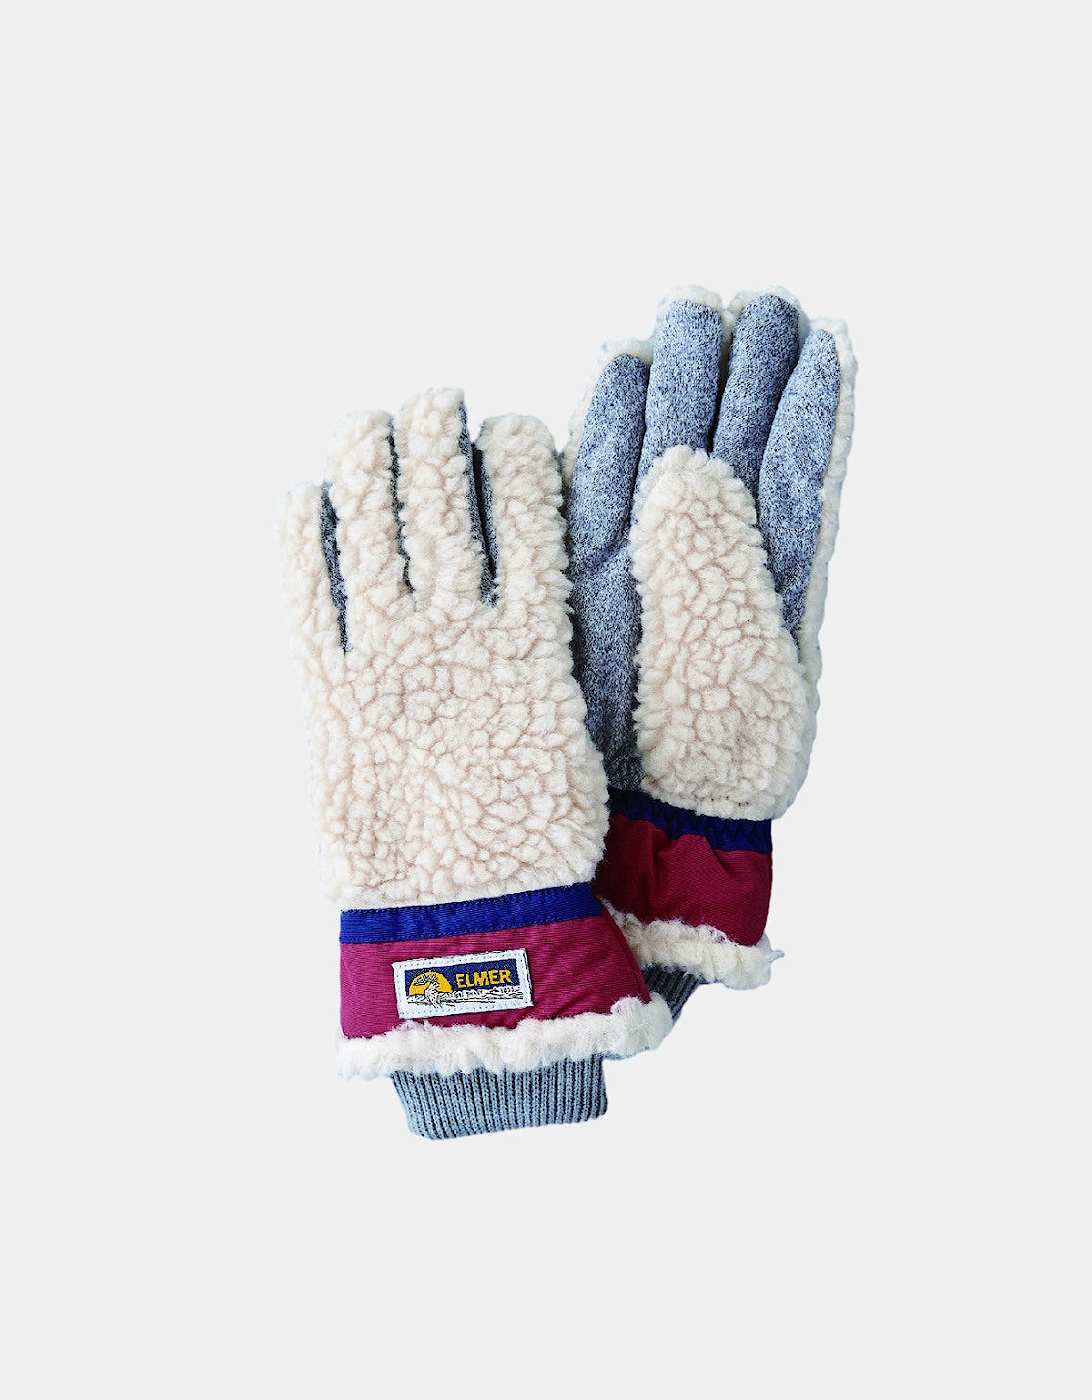 353 Wool Pile Gloves - Beige/Wine, 2 of 1